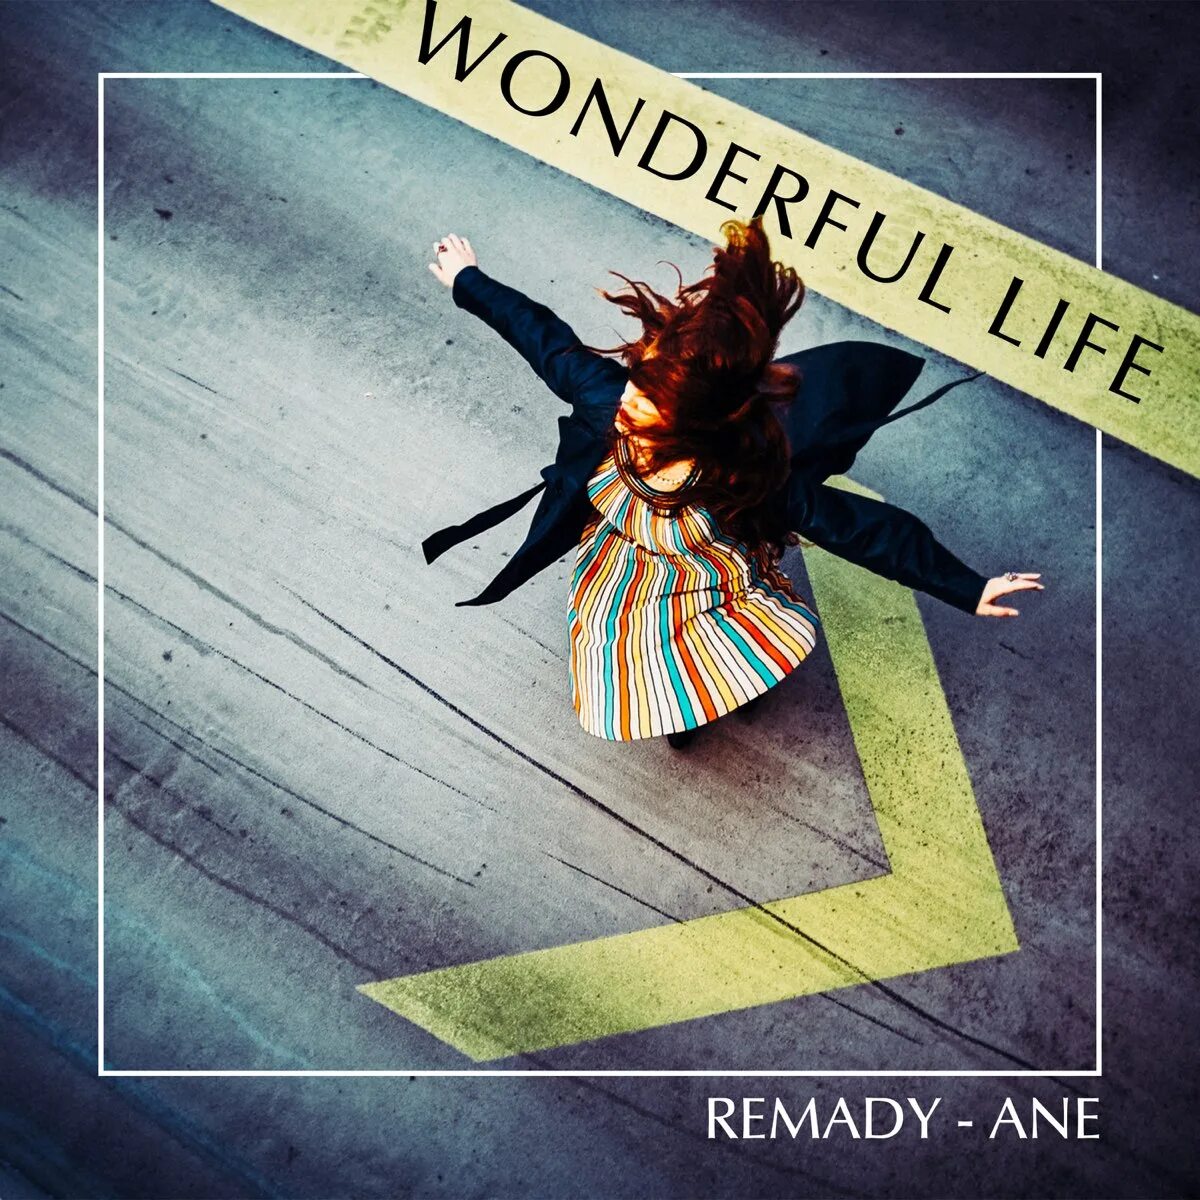 Включи wonderful life. Remady. Remady feat. Ane wonderful Life. Wonderful Life (песня группы Black). Wonderful Life картинки.